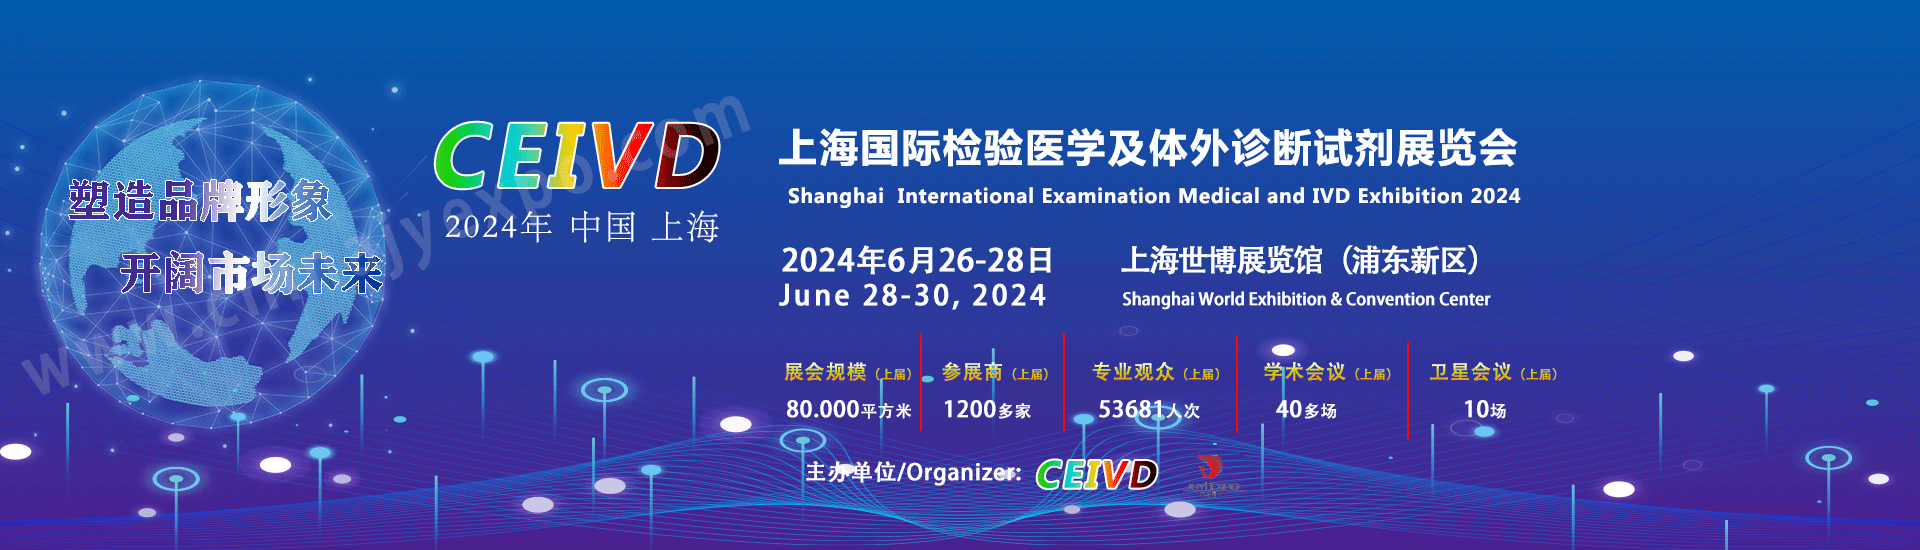 关于2024上海国际检验医学及体外诊断试剂展览会、CEIVD2024的通知